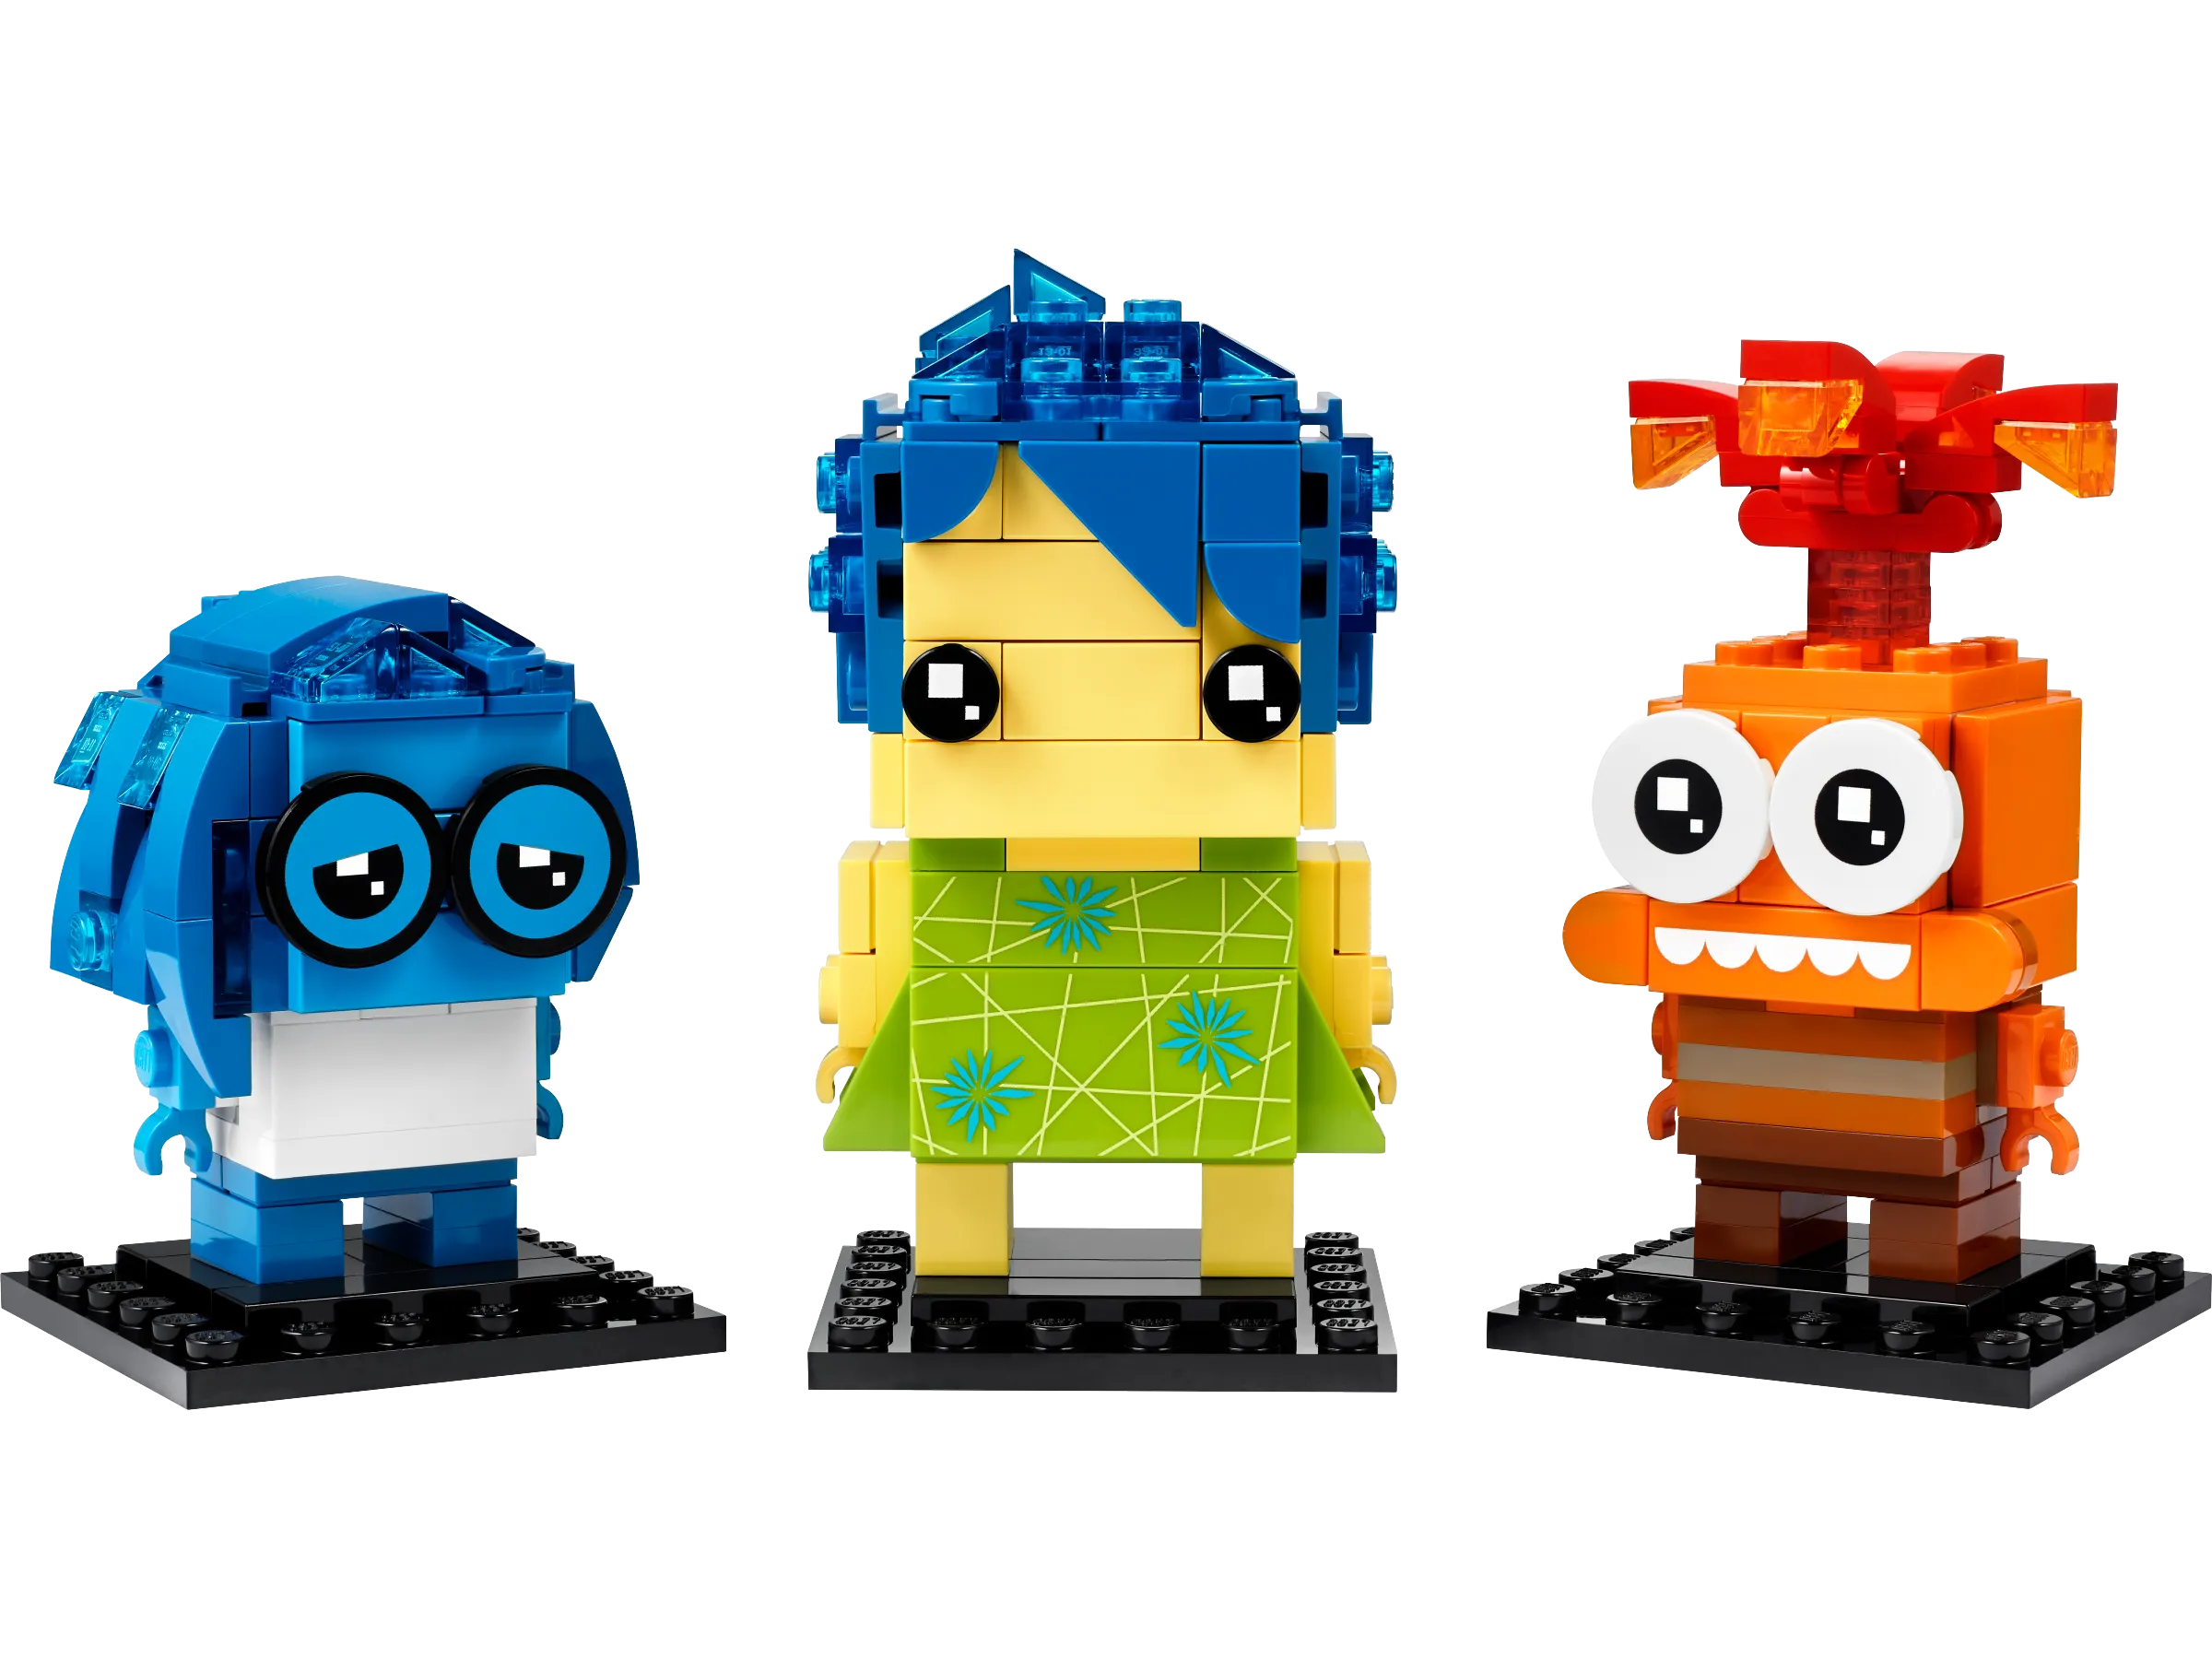 限定SALE大人気LEGO Brickheadz Disney 知育玩具